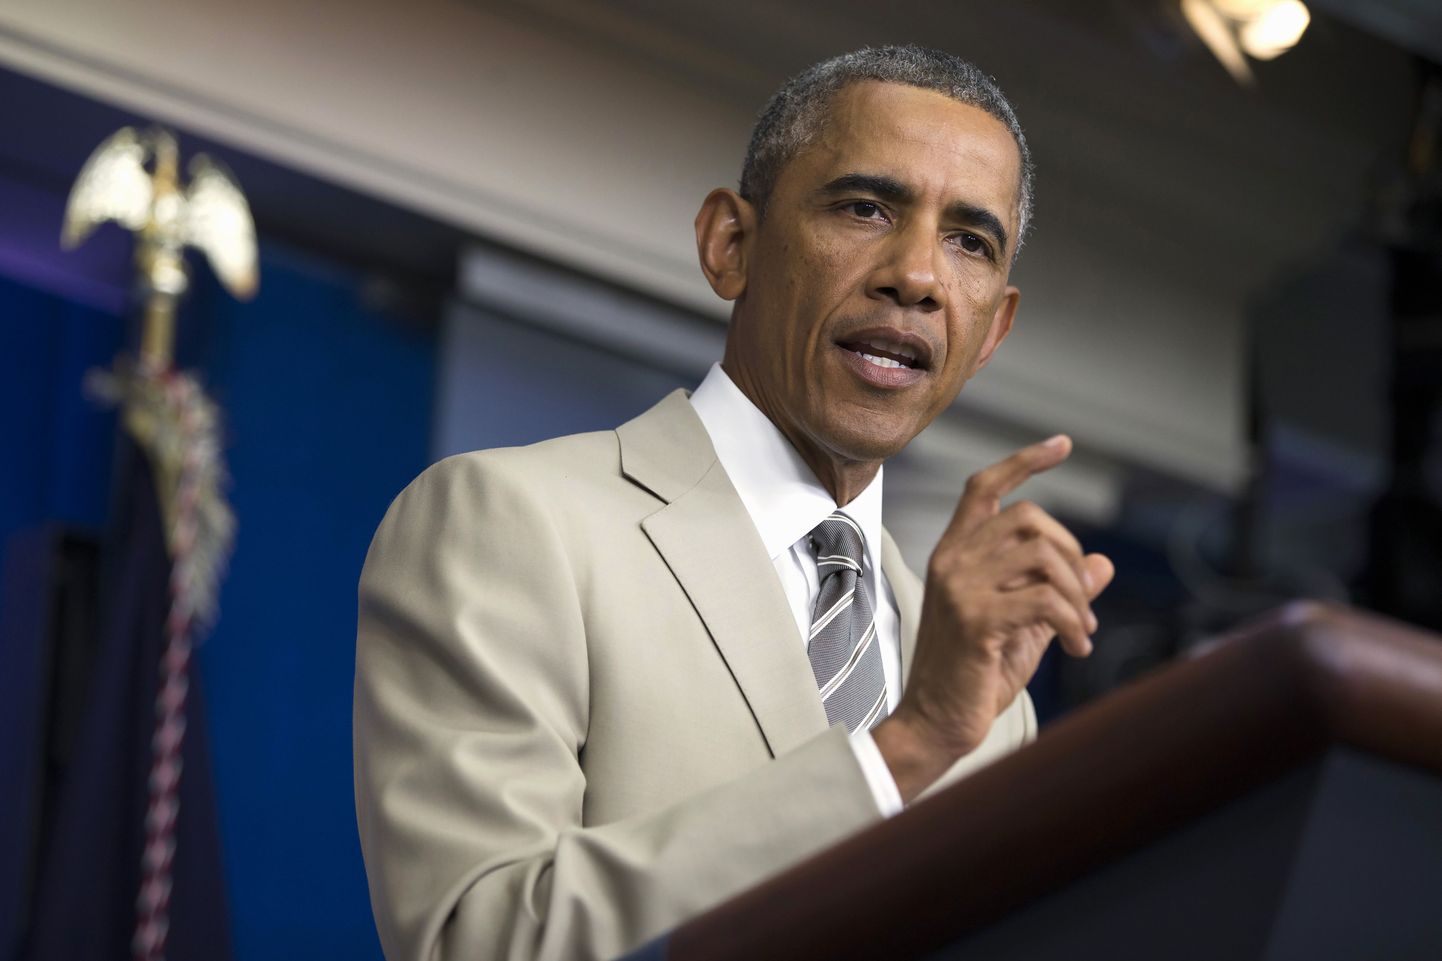 Явление Обамы в светлом костюме стало поводом для разговоров.